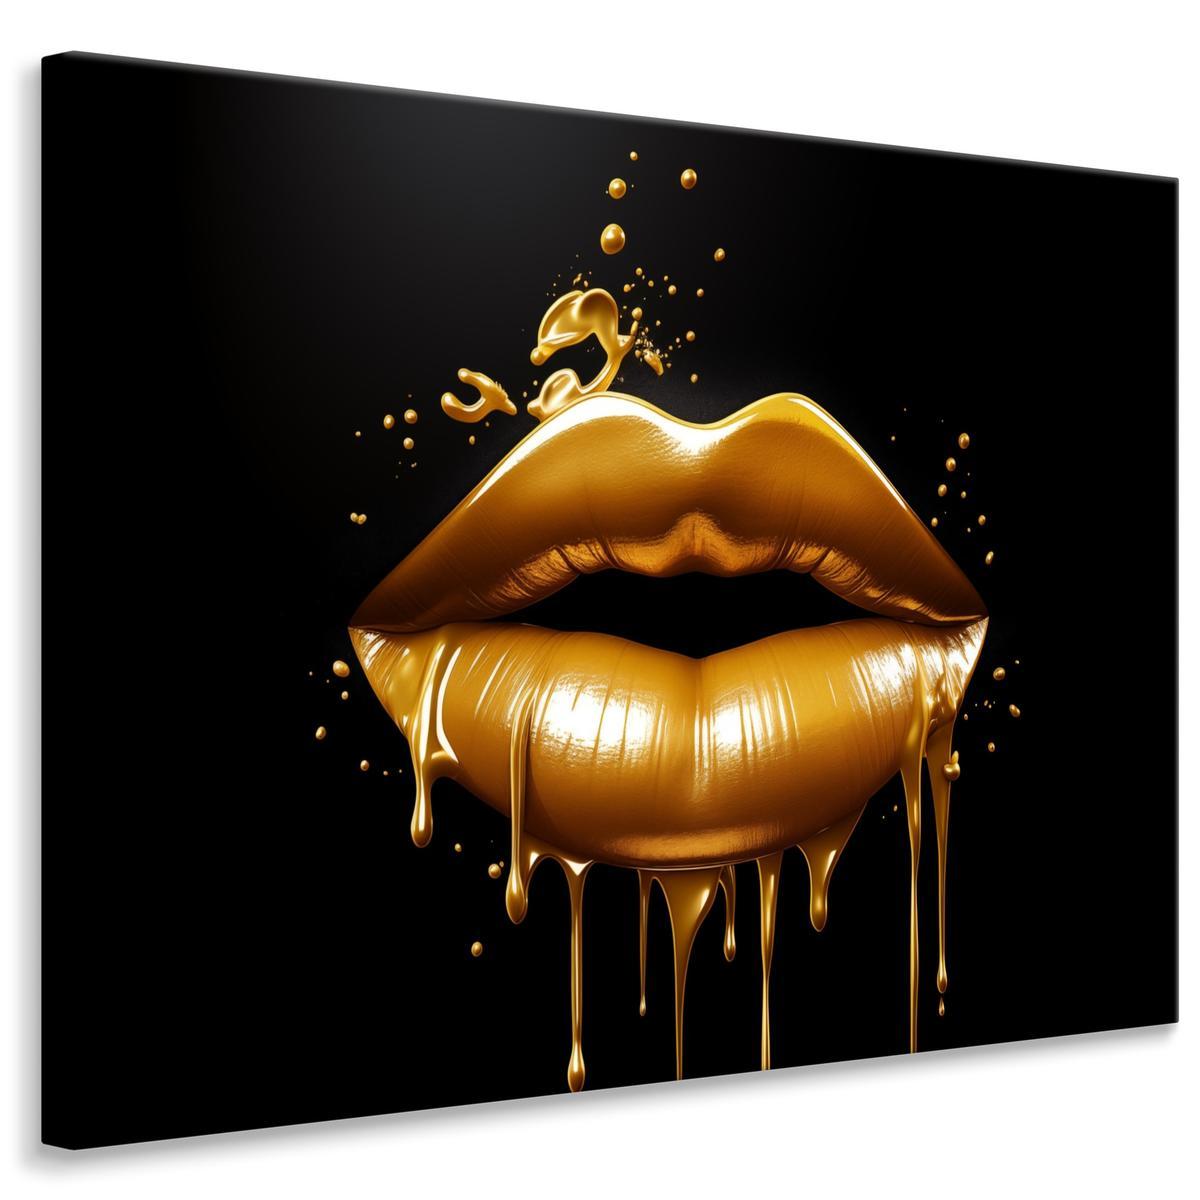 Obraz Na Ścianę Do Salonu Złote USTA Abstrakcja Styl Glamour 120x80cm 0 Full Screen